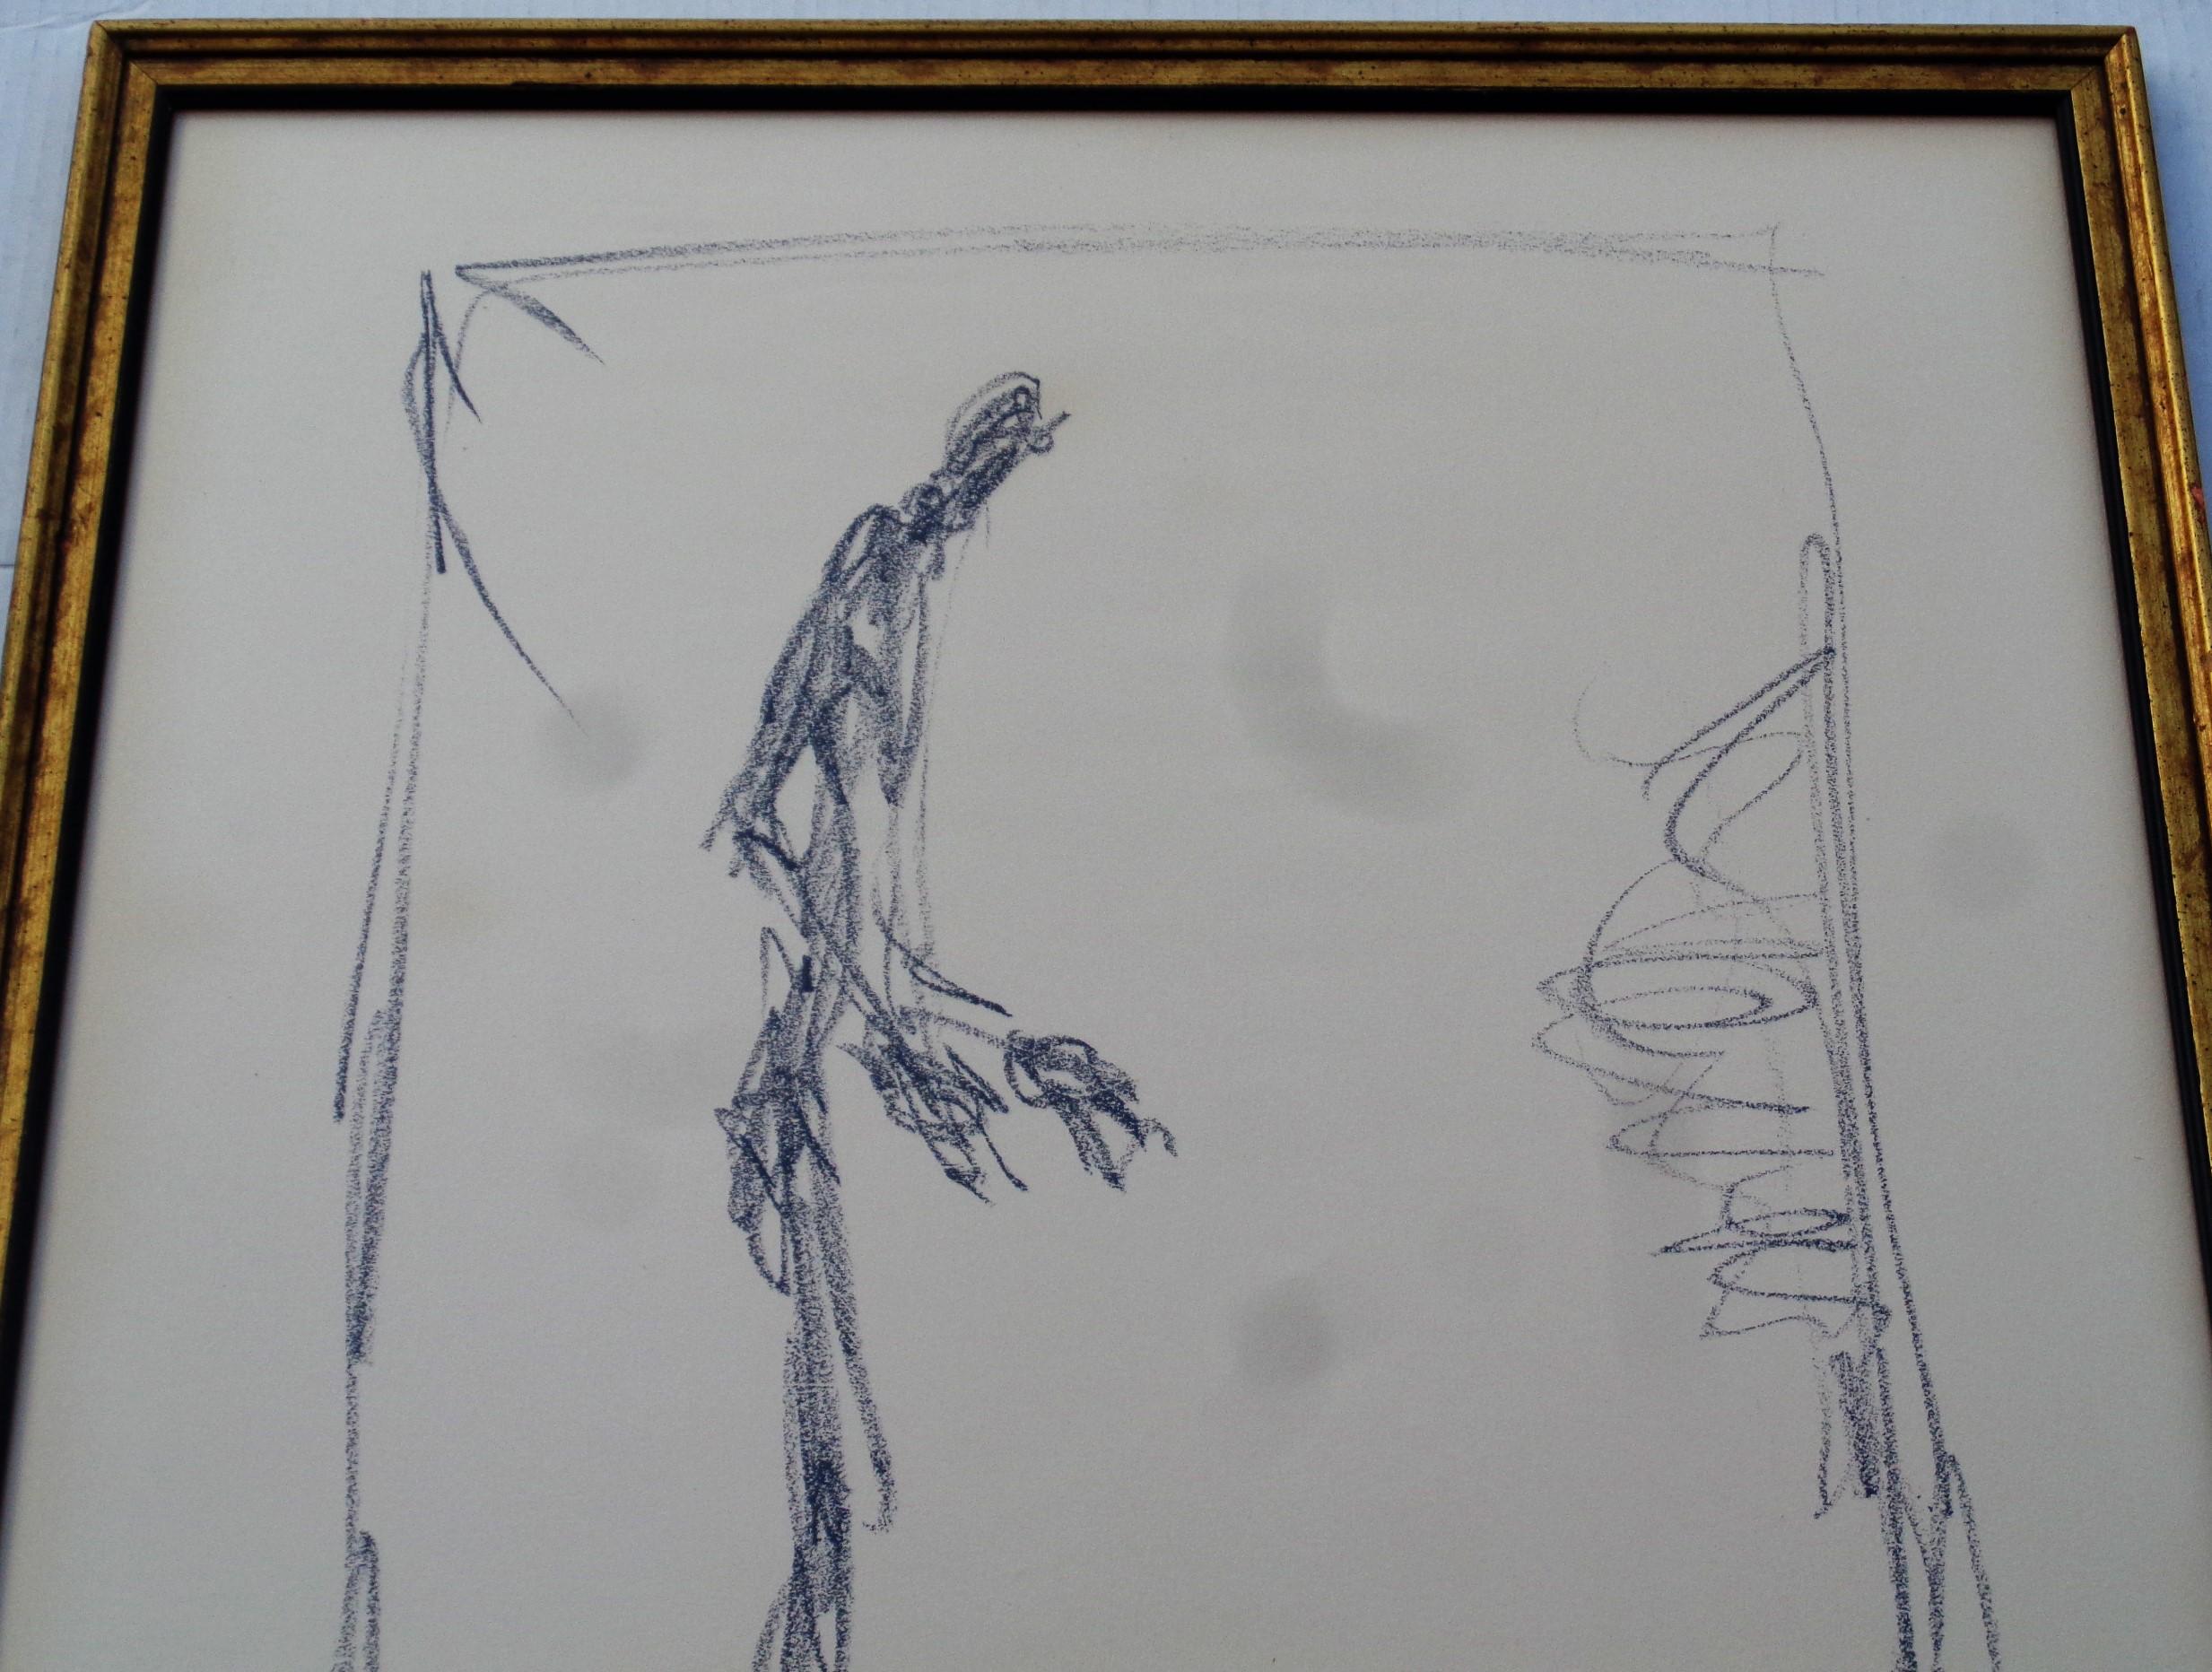 D'après Alberto Giacometti - Dessin 1 - lithographie grand format sur papier chiffon dans un cadre d'époque en bois doré sous verre (étiquette originale de l'encadreur au dos) - Empire Artist's Materials / 831 Lexington Avenue N.Y. 10021  / Phone RE